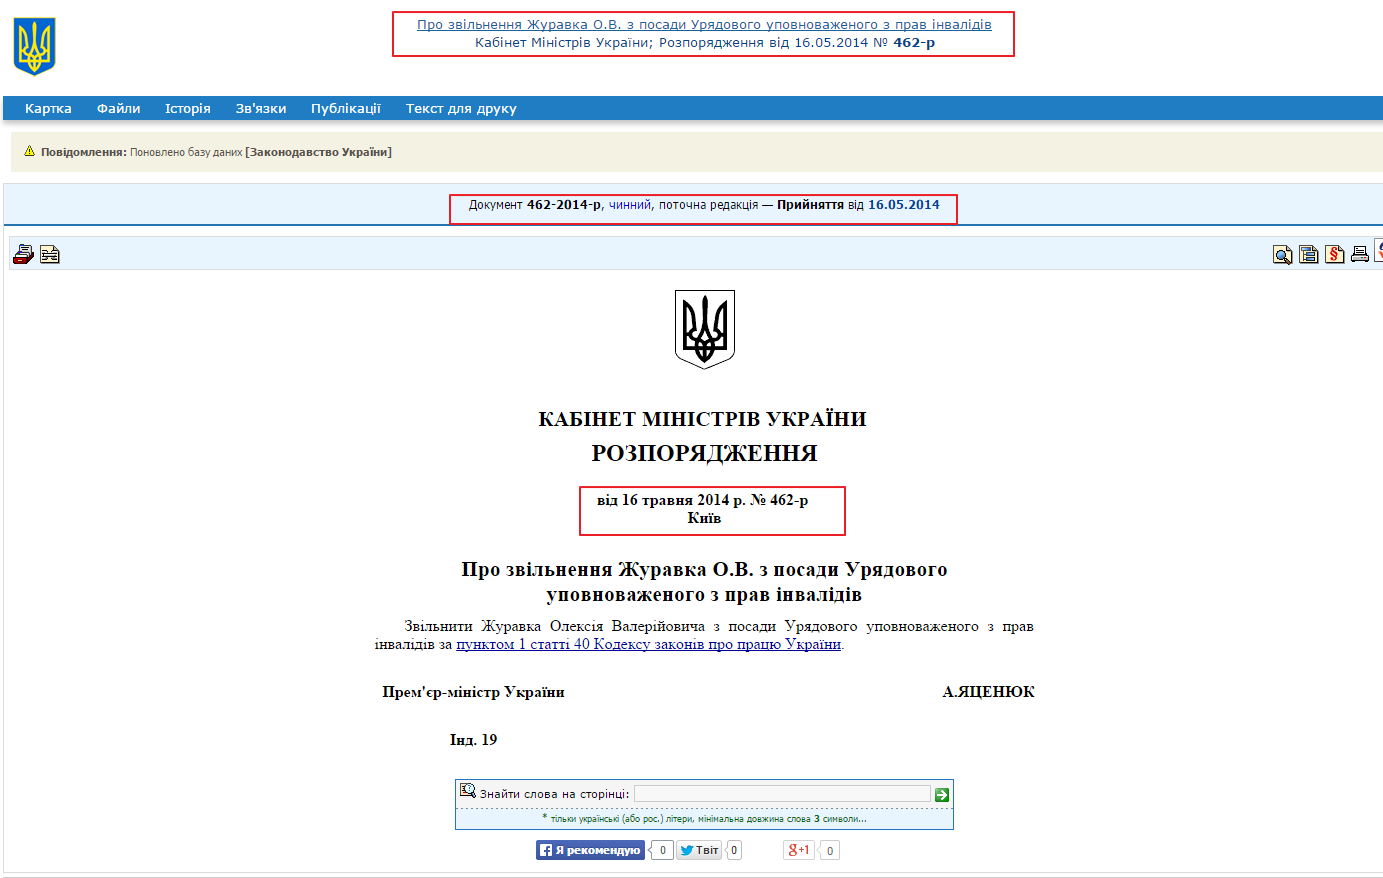 http://zakon1.rada.gov.ua/laws/show/462-2014-%D1%80